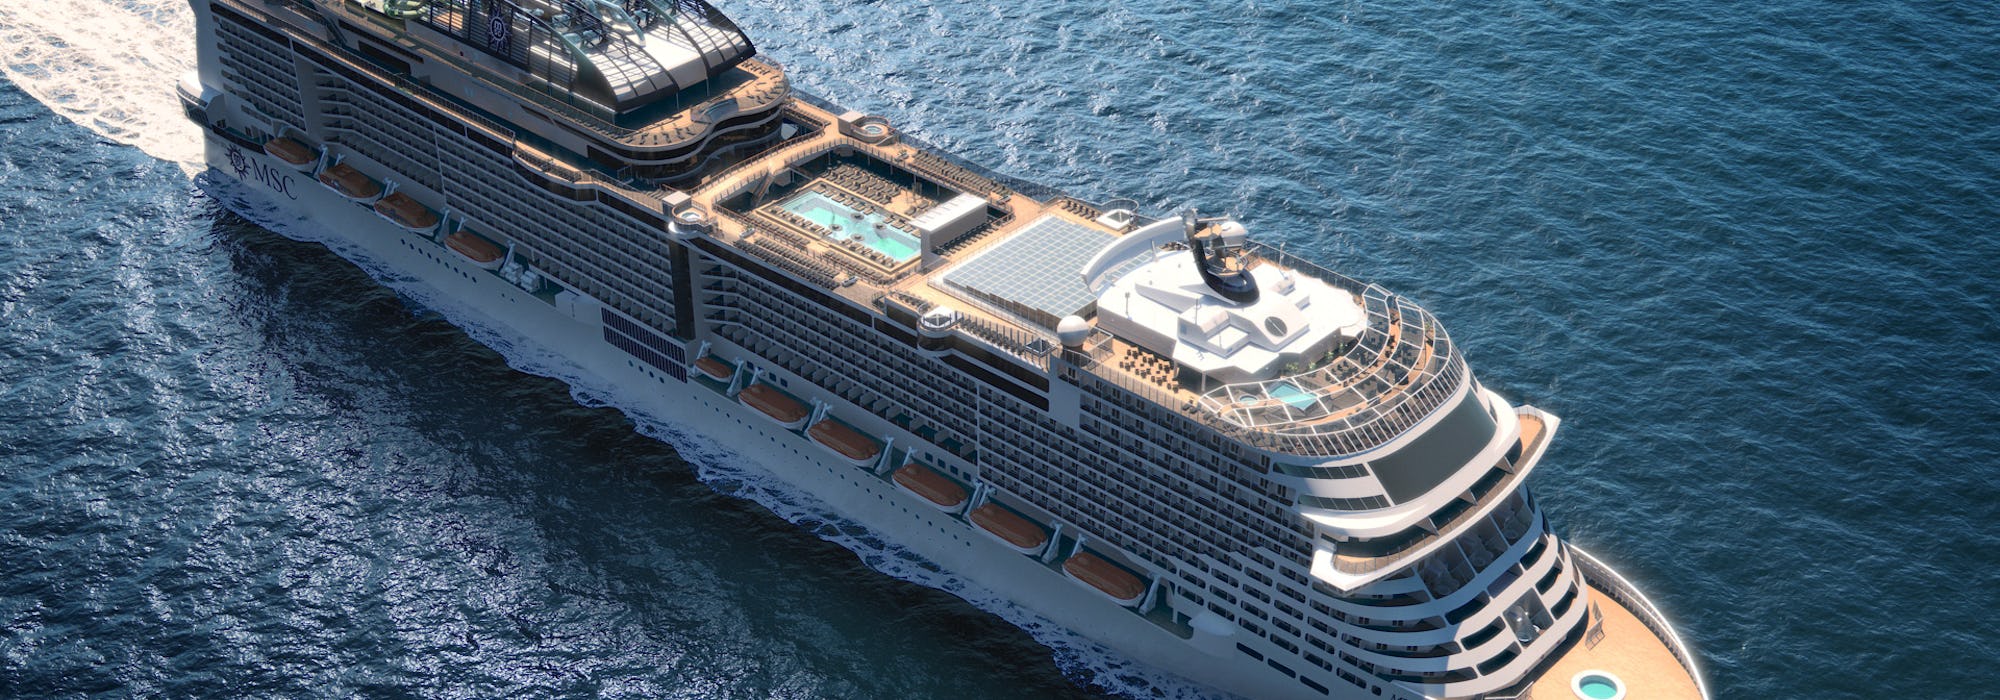 Bild snett ovanifrån på MSC Cruises nyaste fartyg MSC Grandiosa.